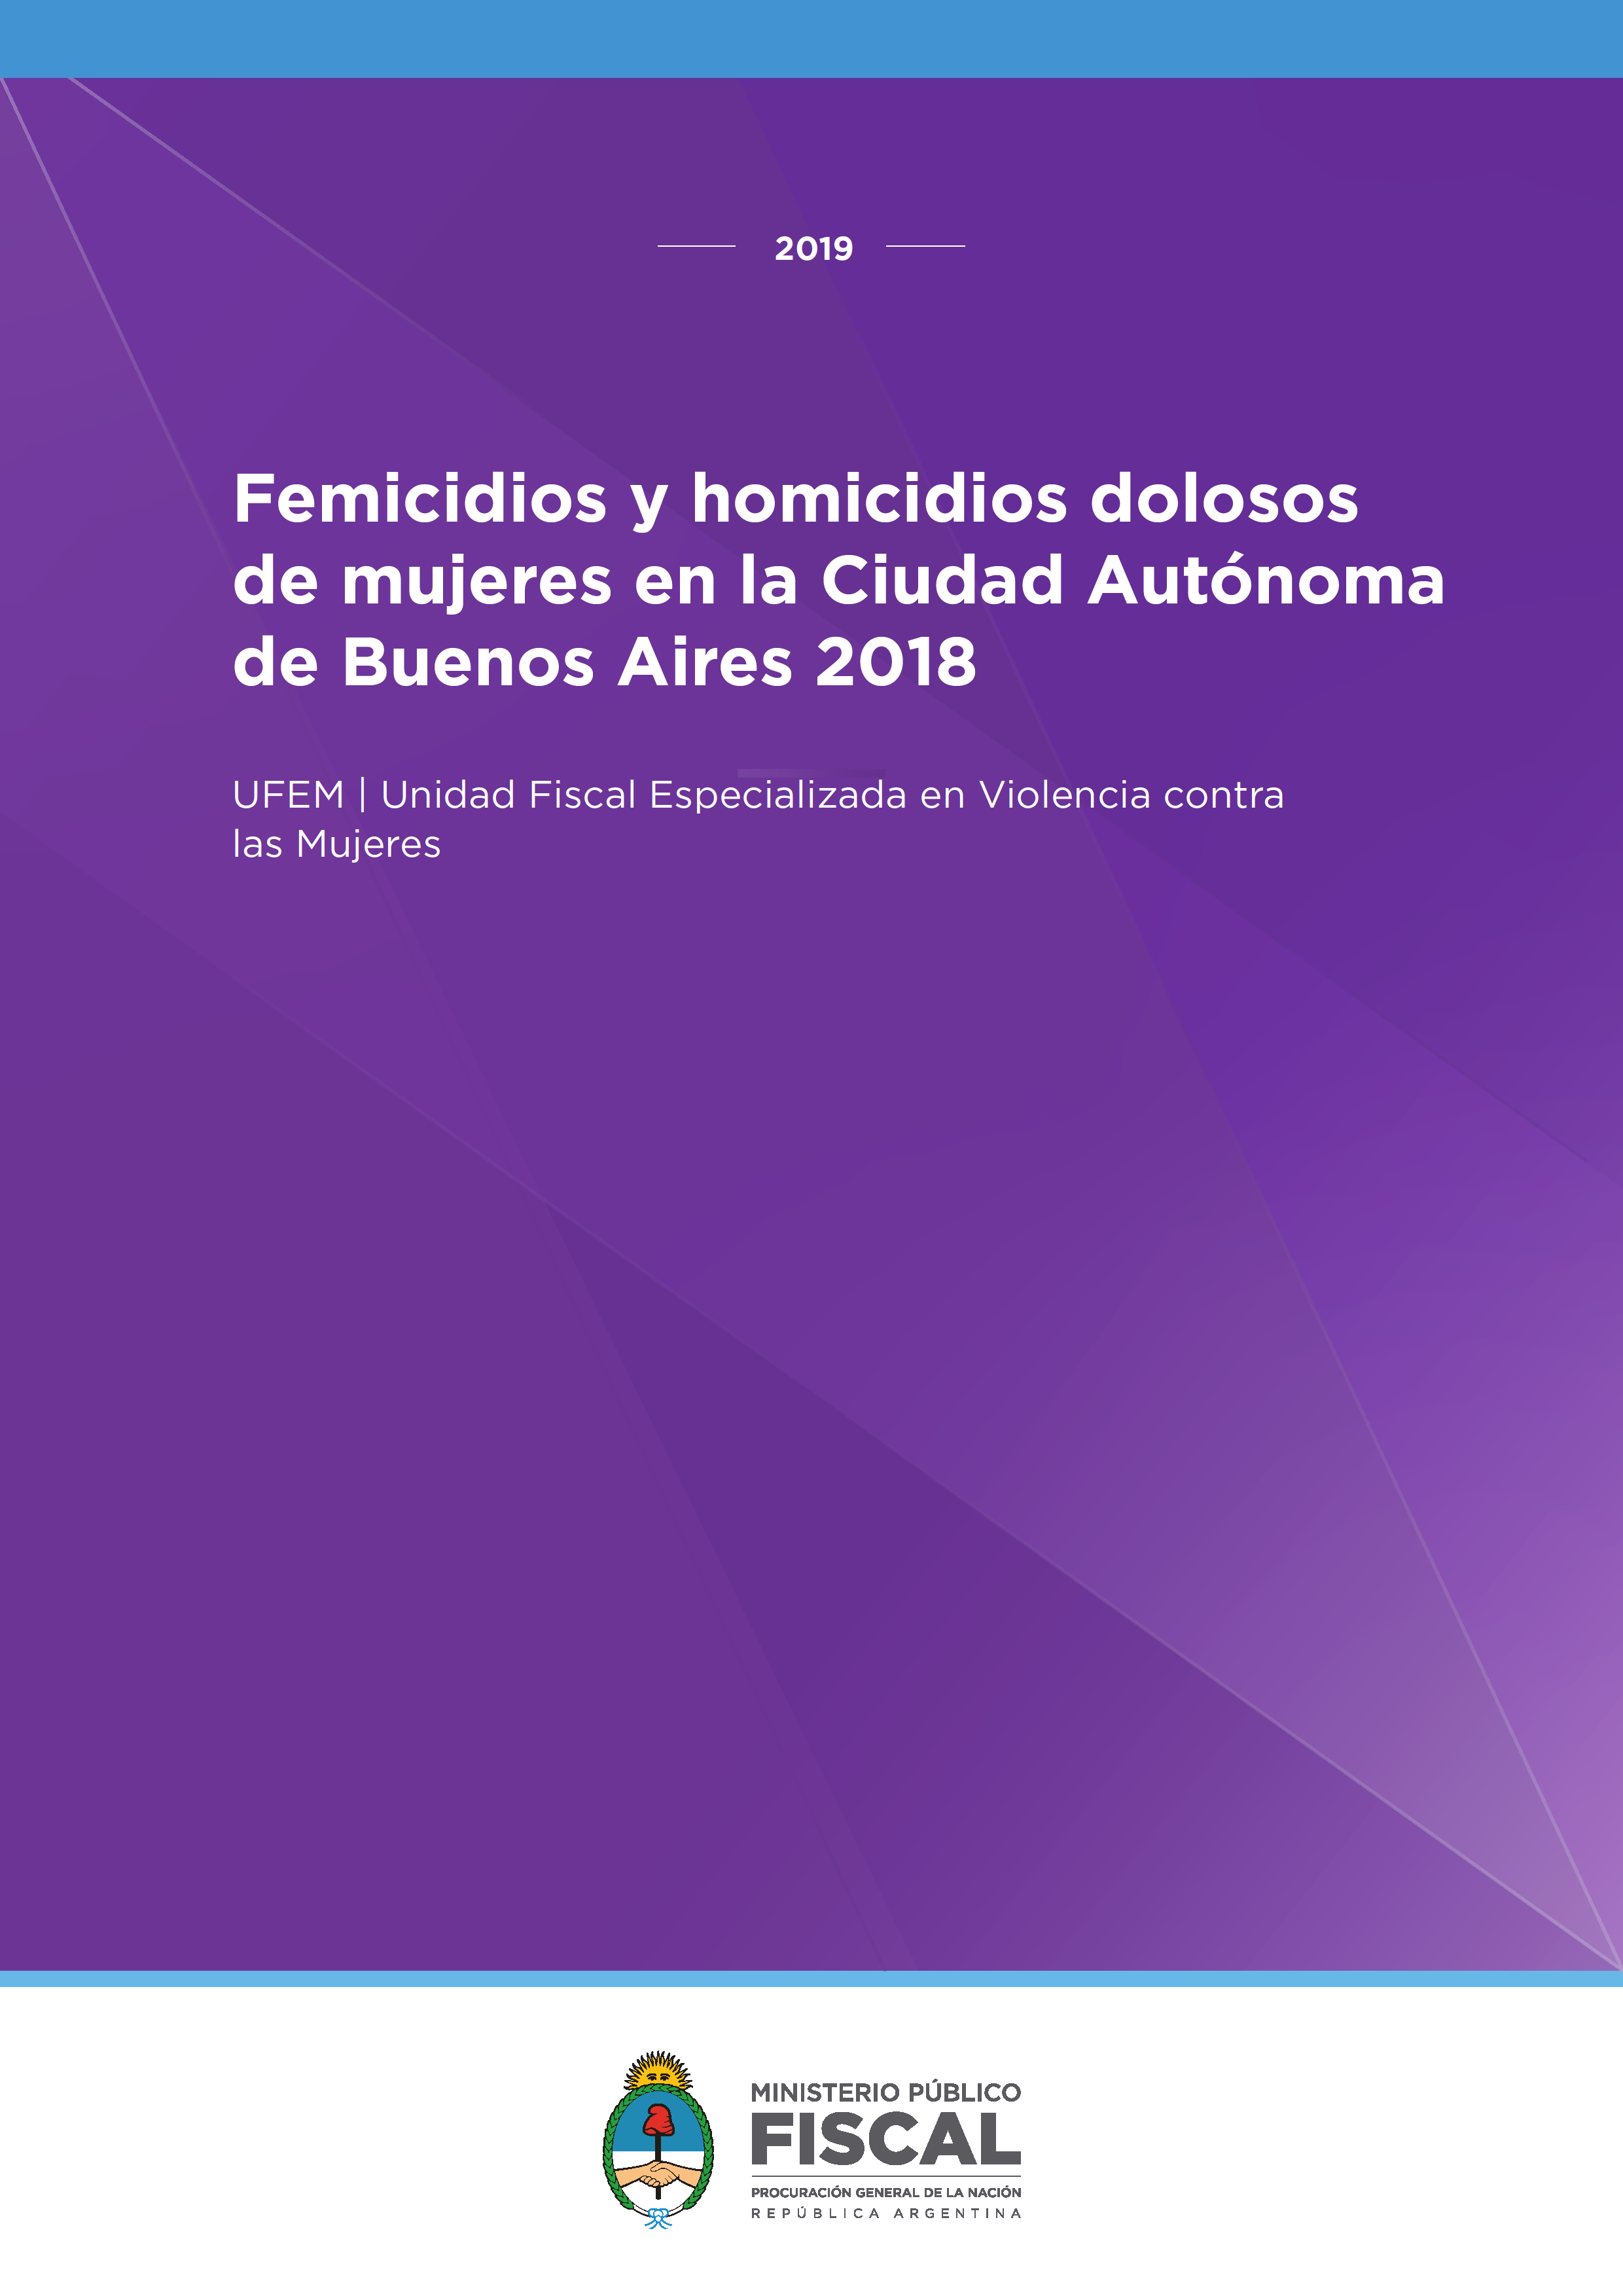 Femicidios y Homicidios dolosos de mujeres en la Ciudad Autónoma de Buenos Aires 2018